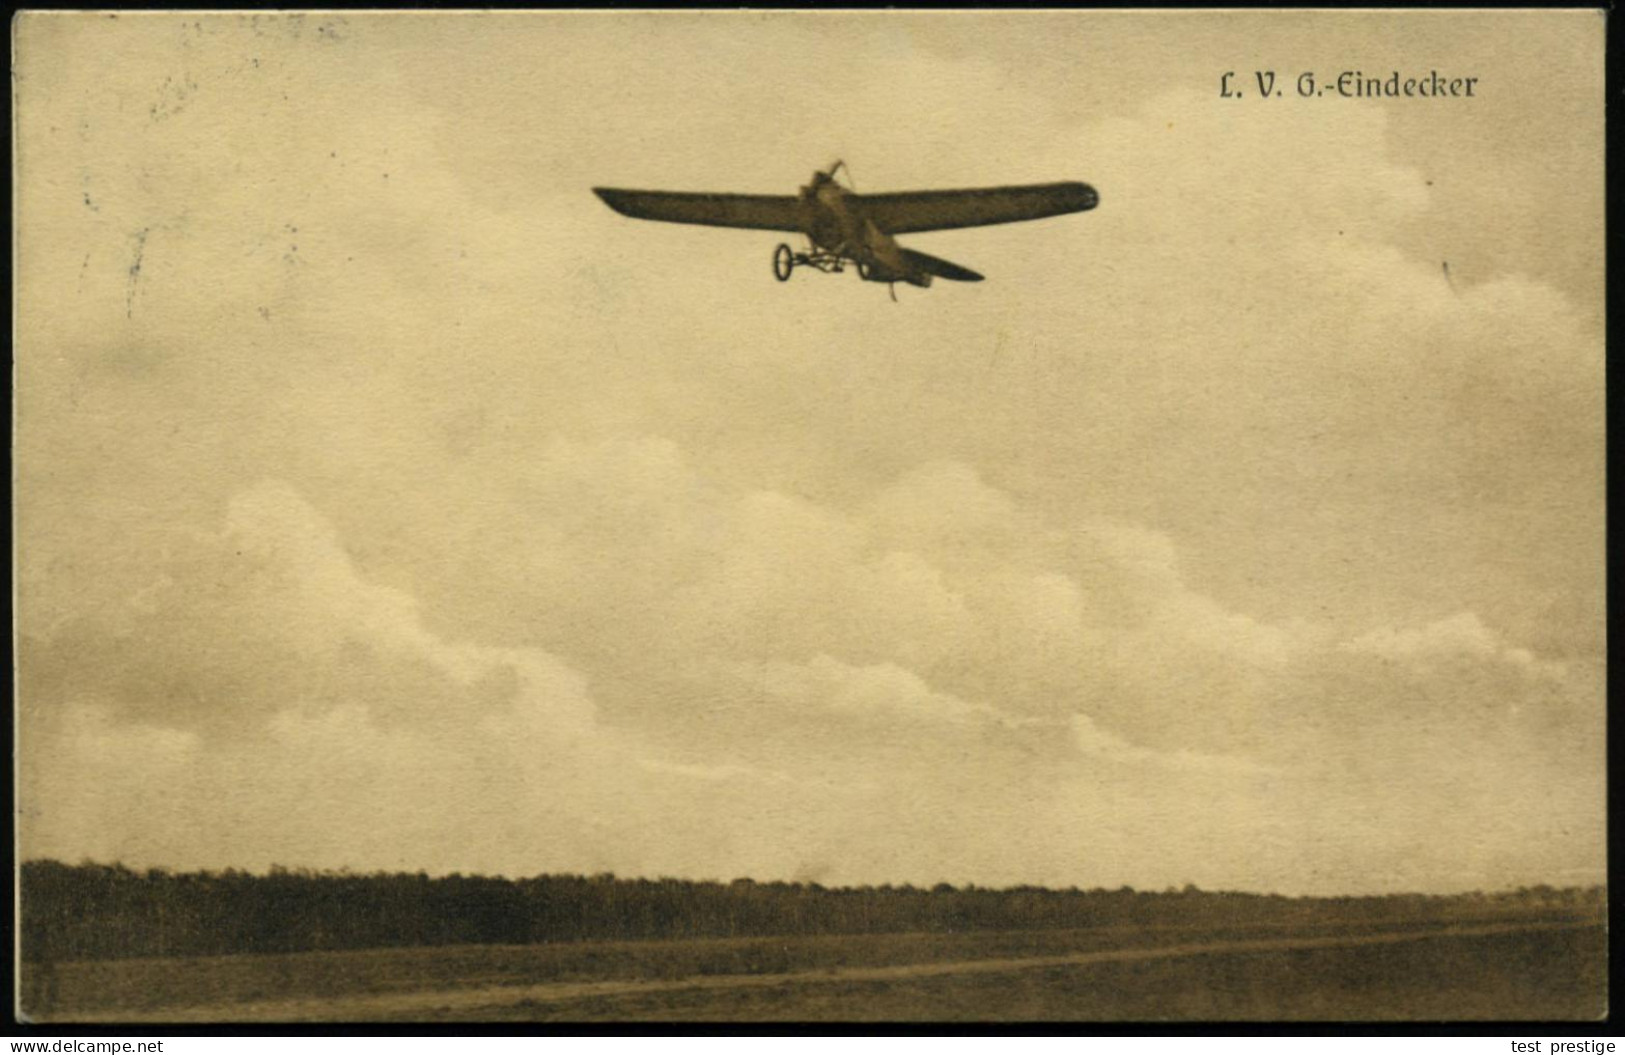 Berlin-Adlershof 1913/14 Korrespondenz eines Fliegers der "Vesuchsabteilung des Militär-Verkehrswesen" ,Flieger-Versuchs